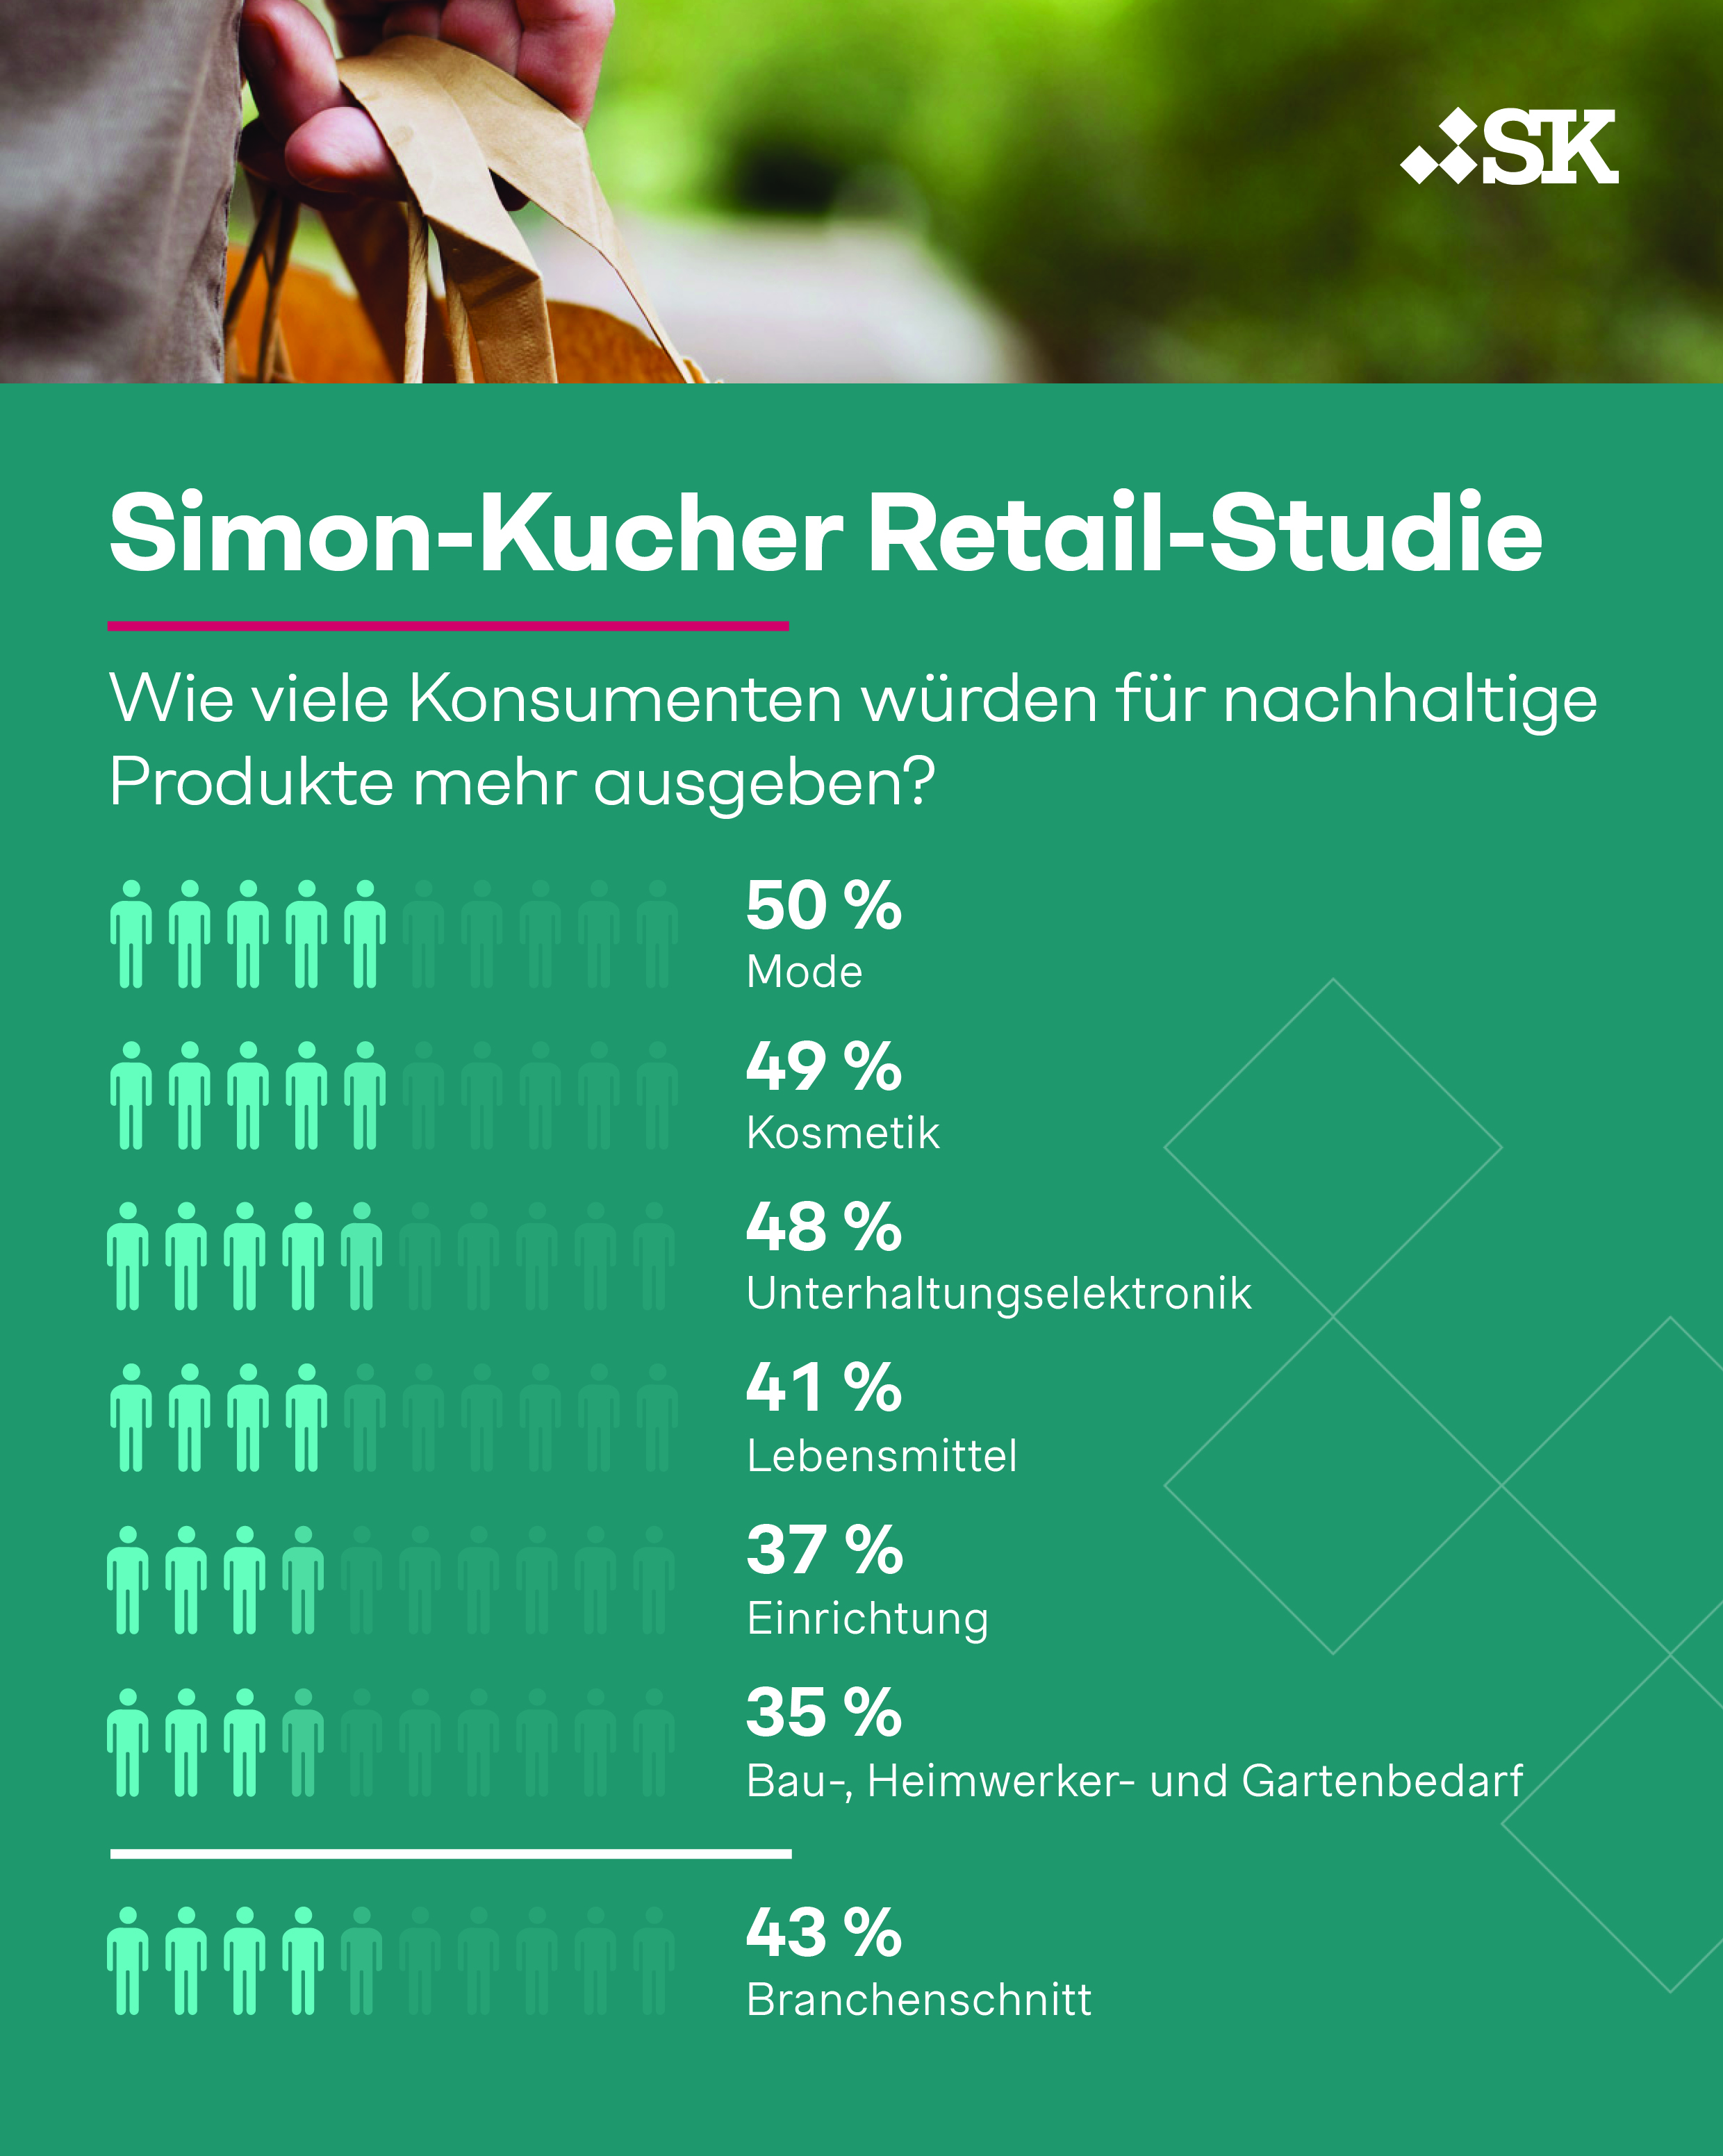 Simon-Kucher Retail-Studie: Ausgaben für nachhaltige Produkte